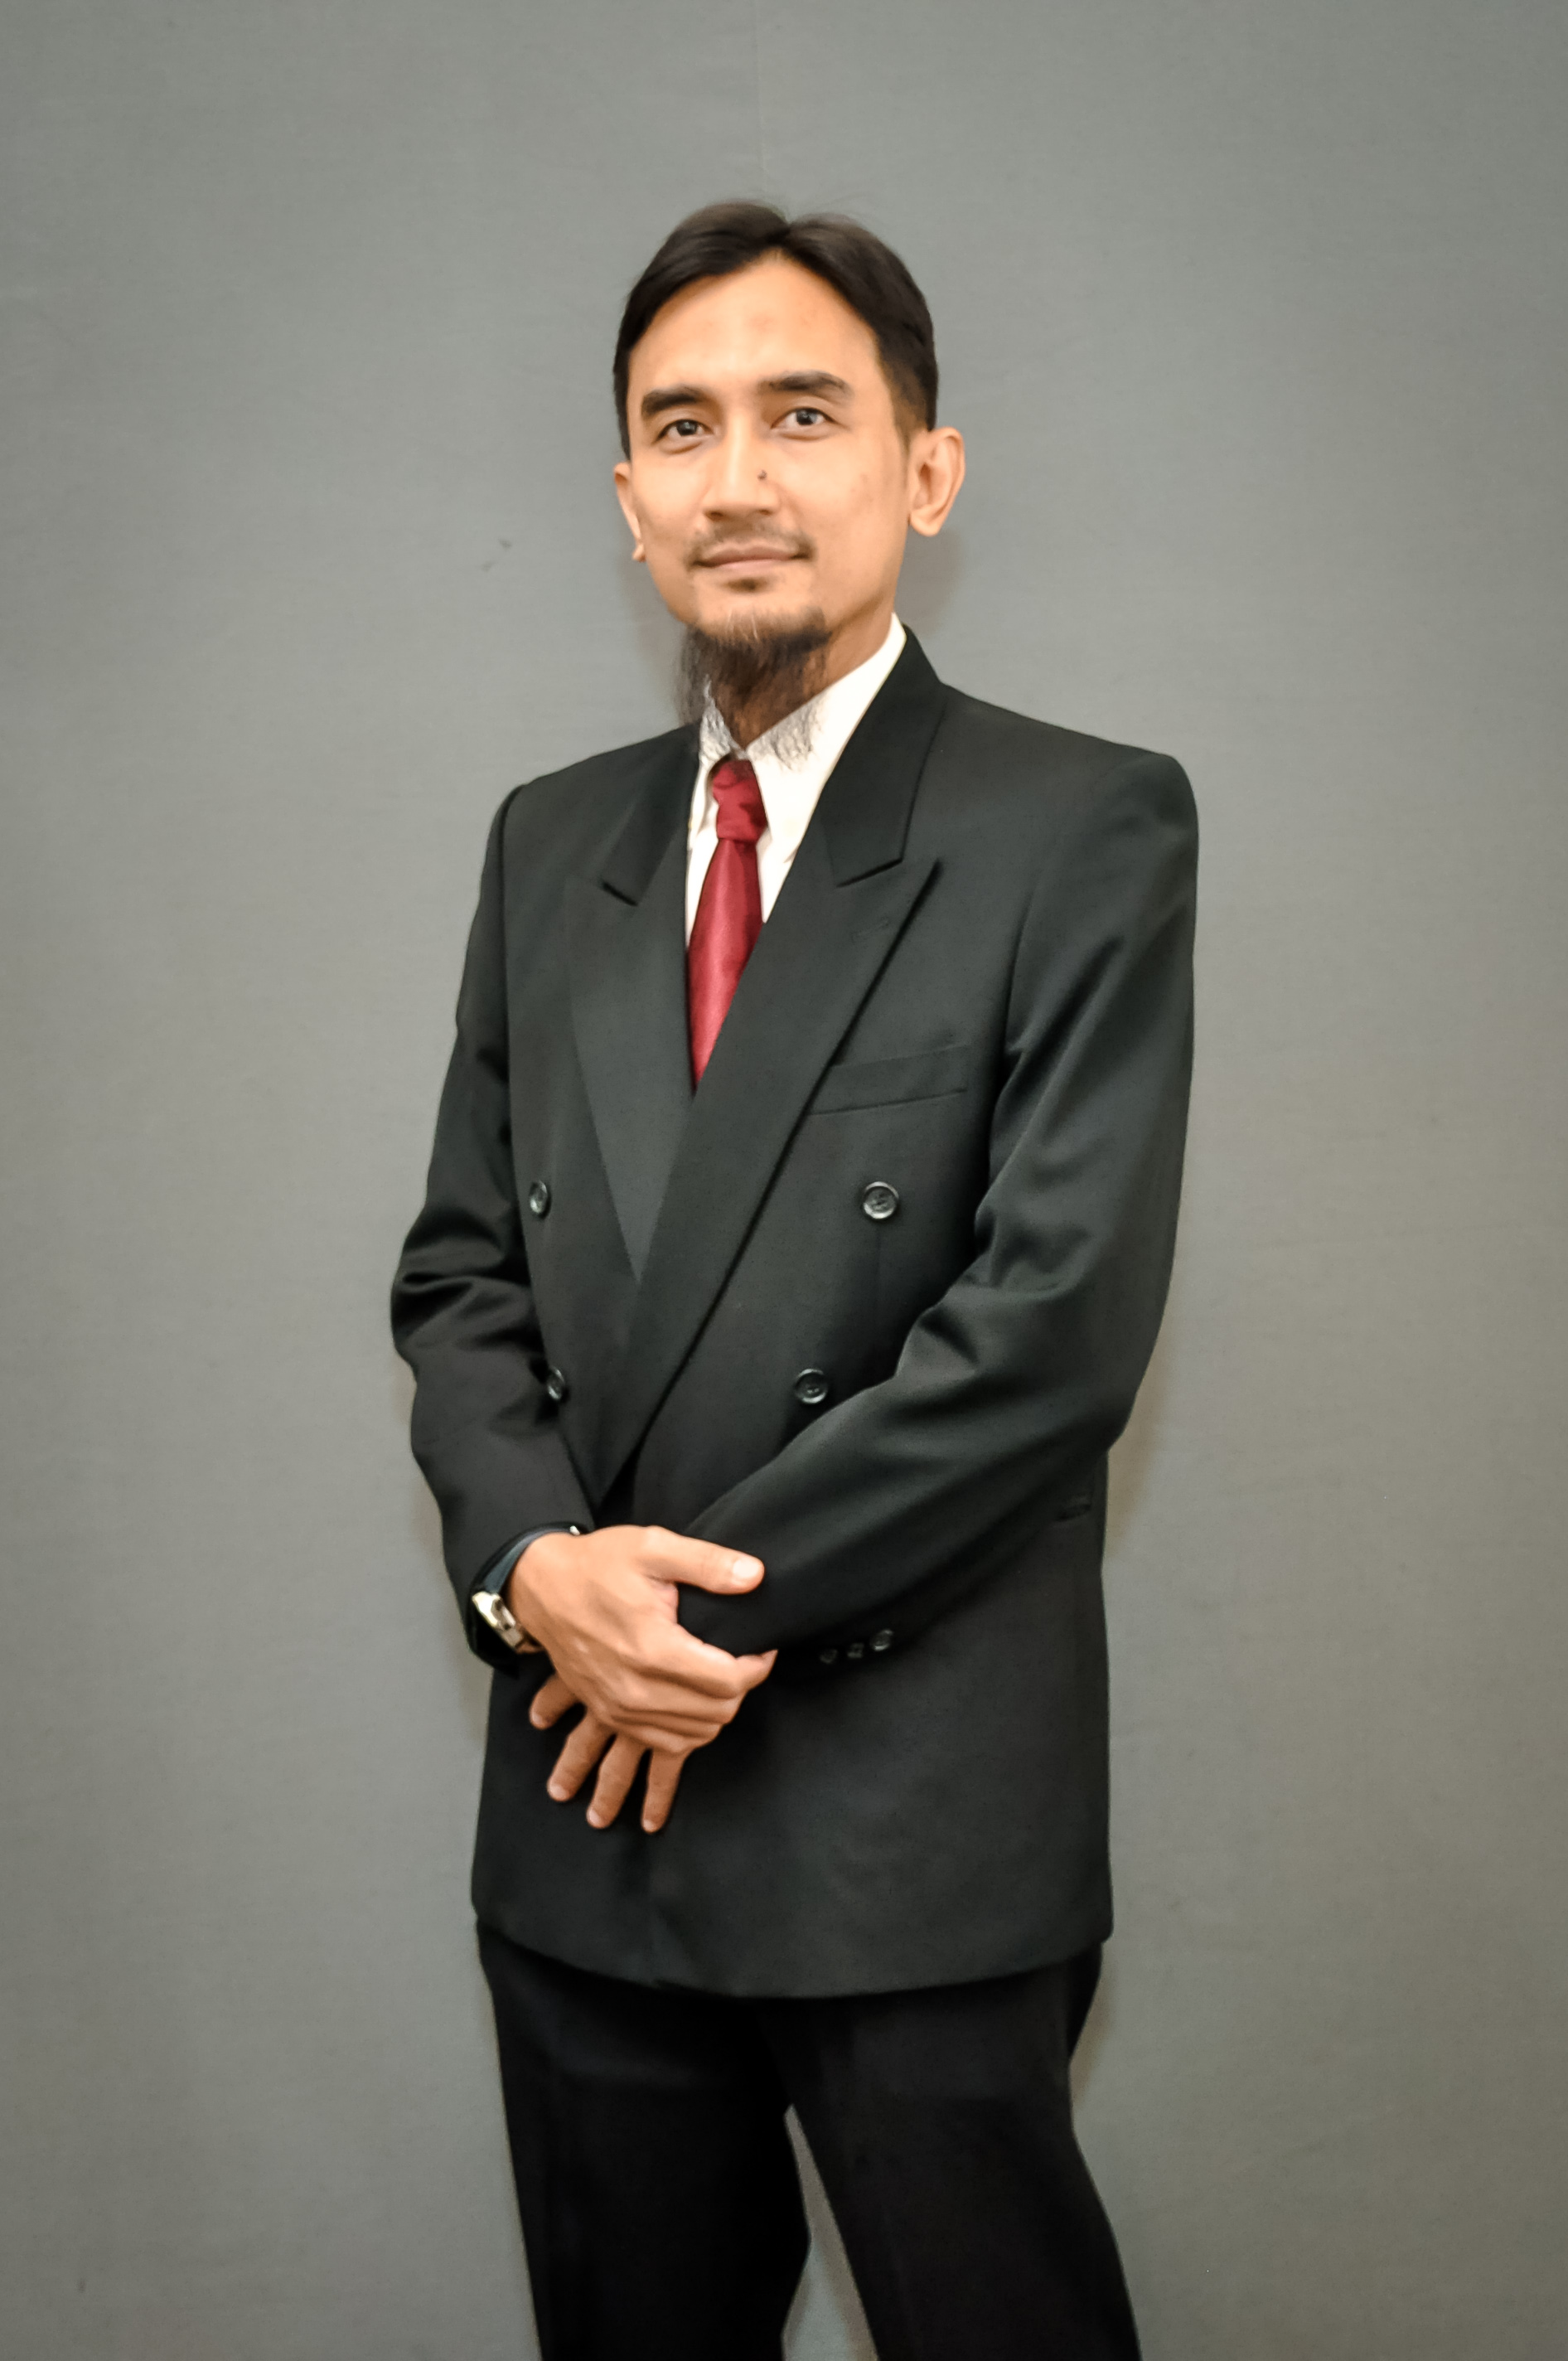 Dr. MOHAMED NAJIB BIN RIBUAN